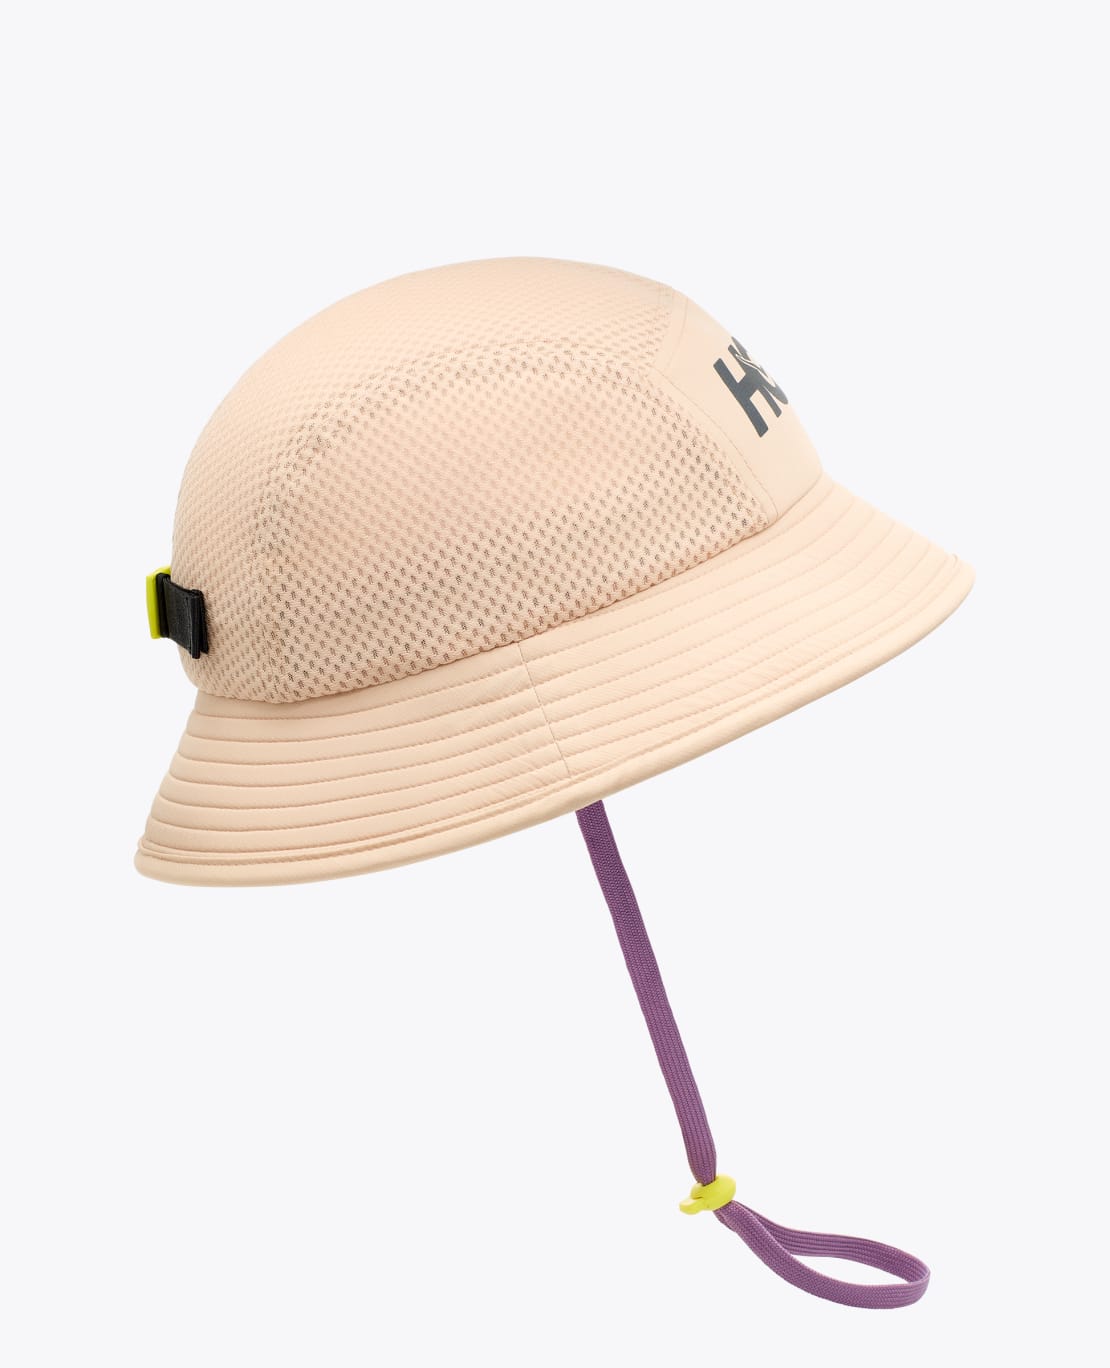 HOKA Adventure Hat